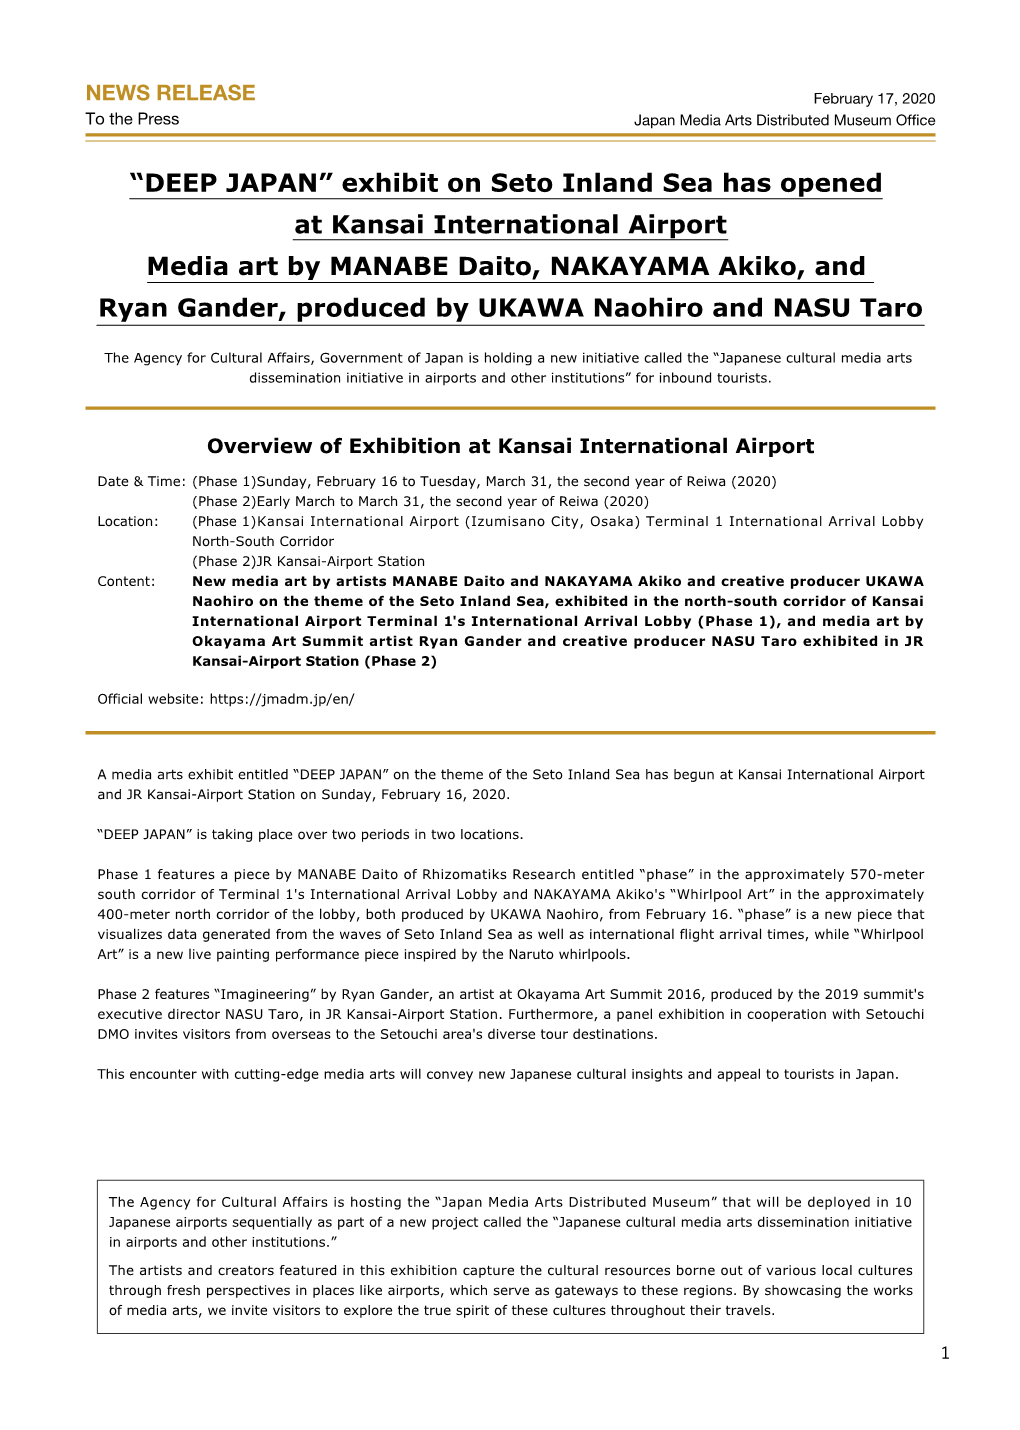 Kansai International Airport News Release